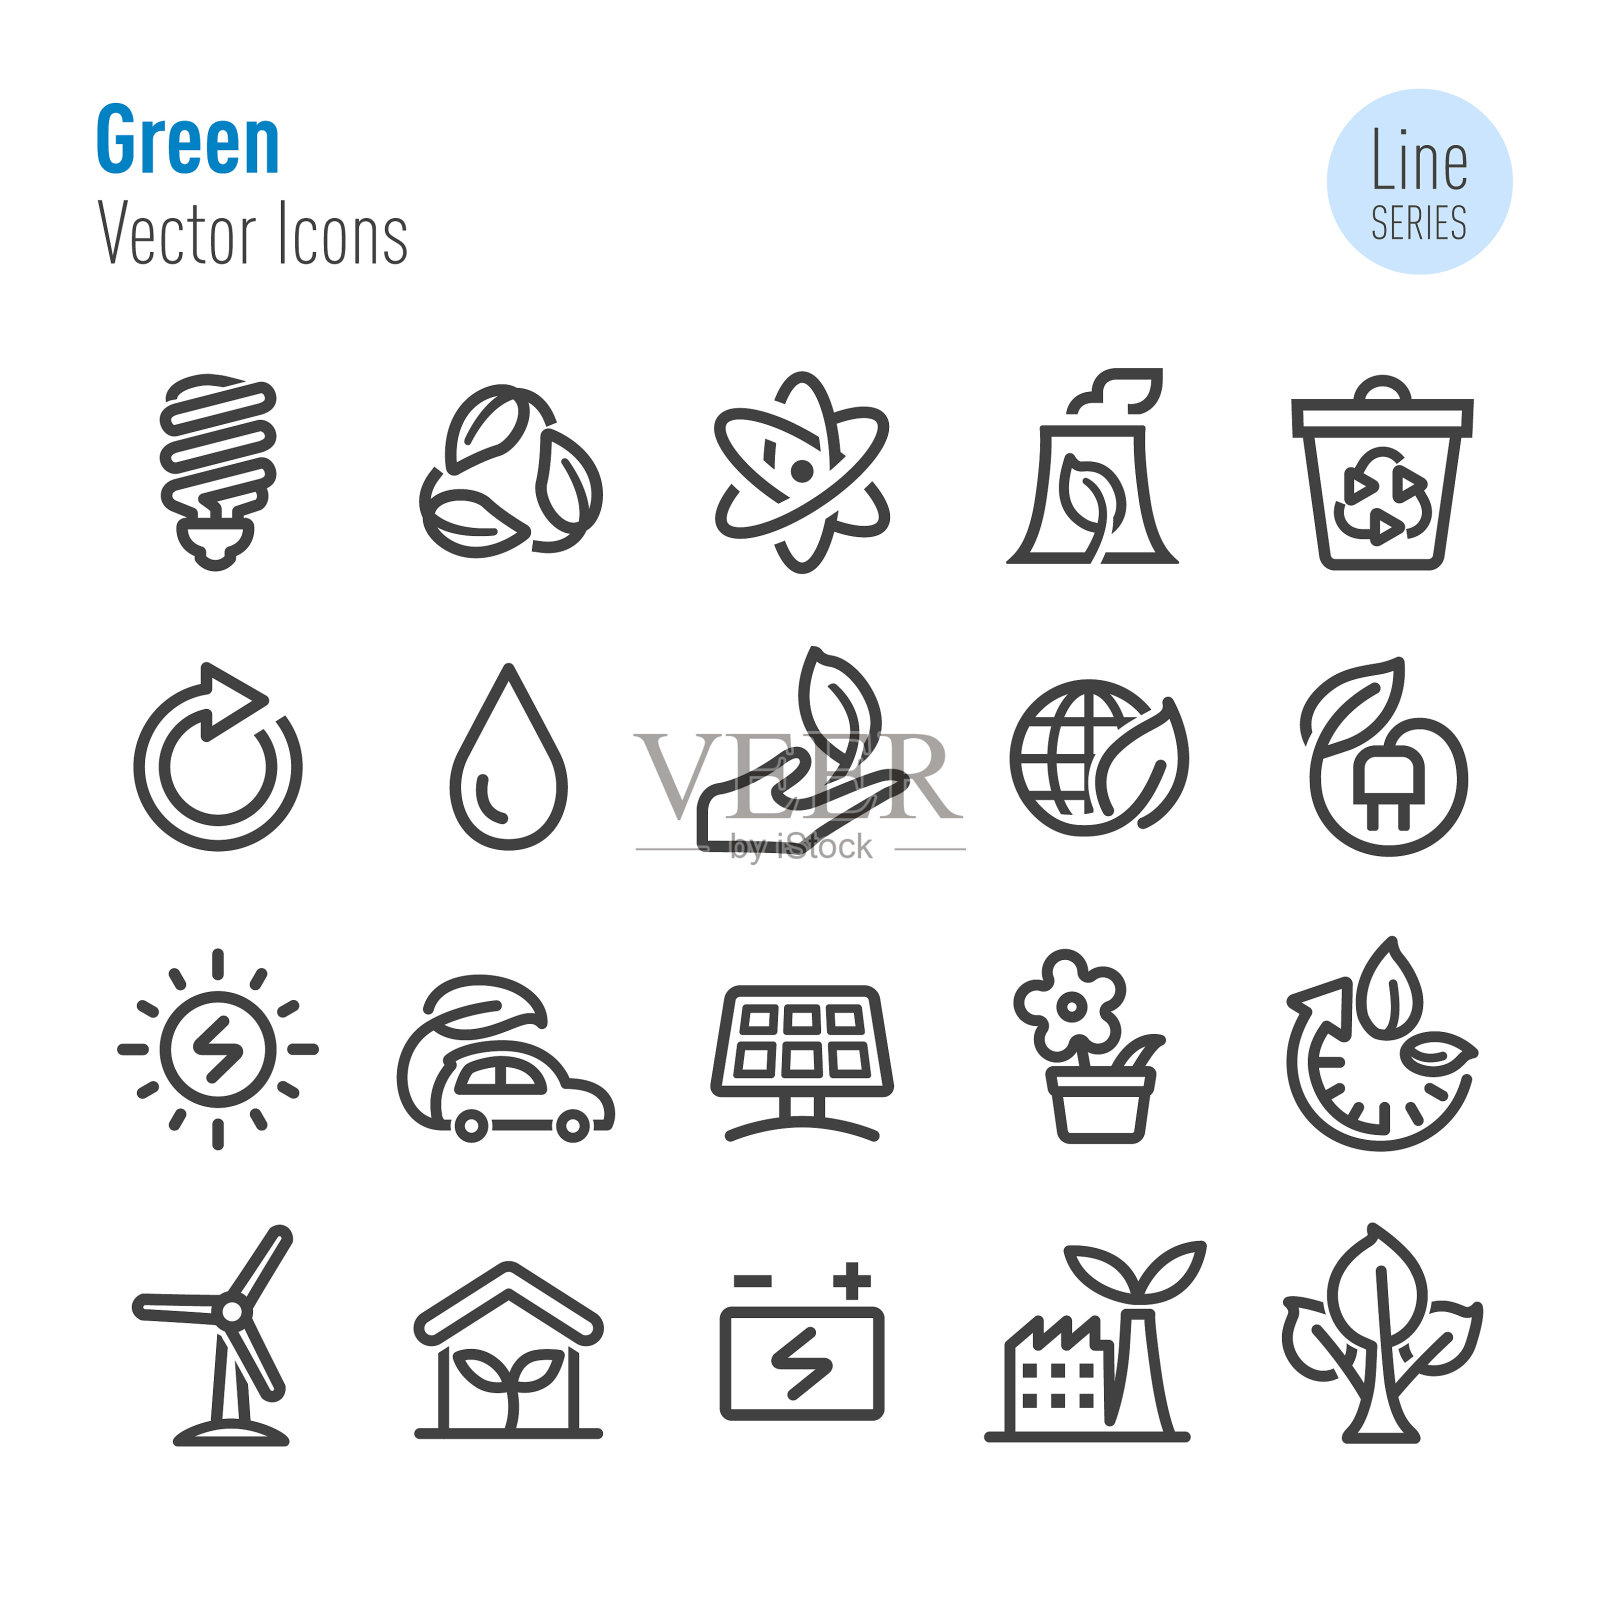 绿色图标-向量线系列插画图片素材